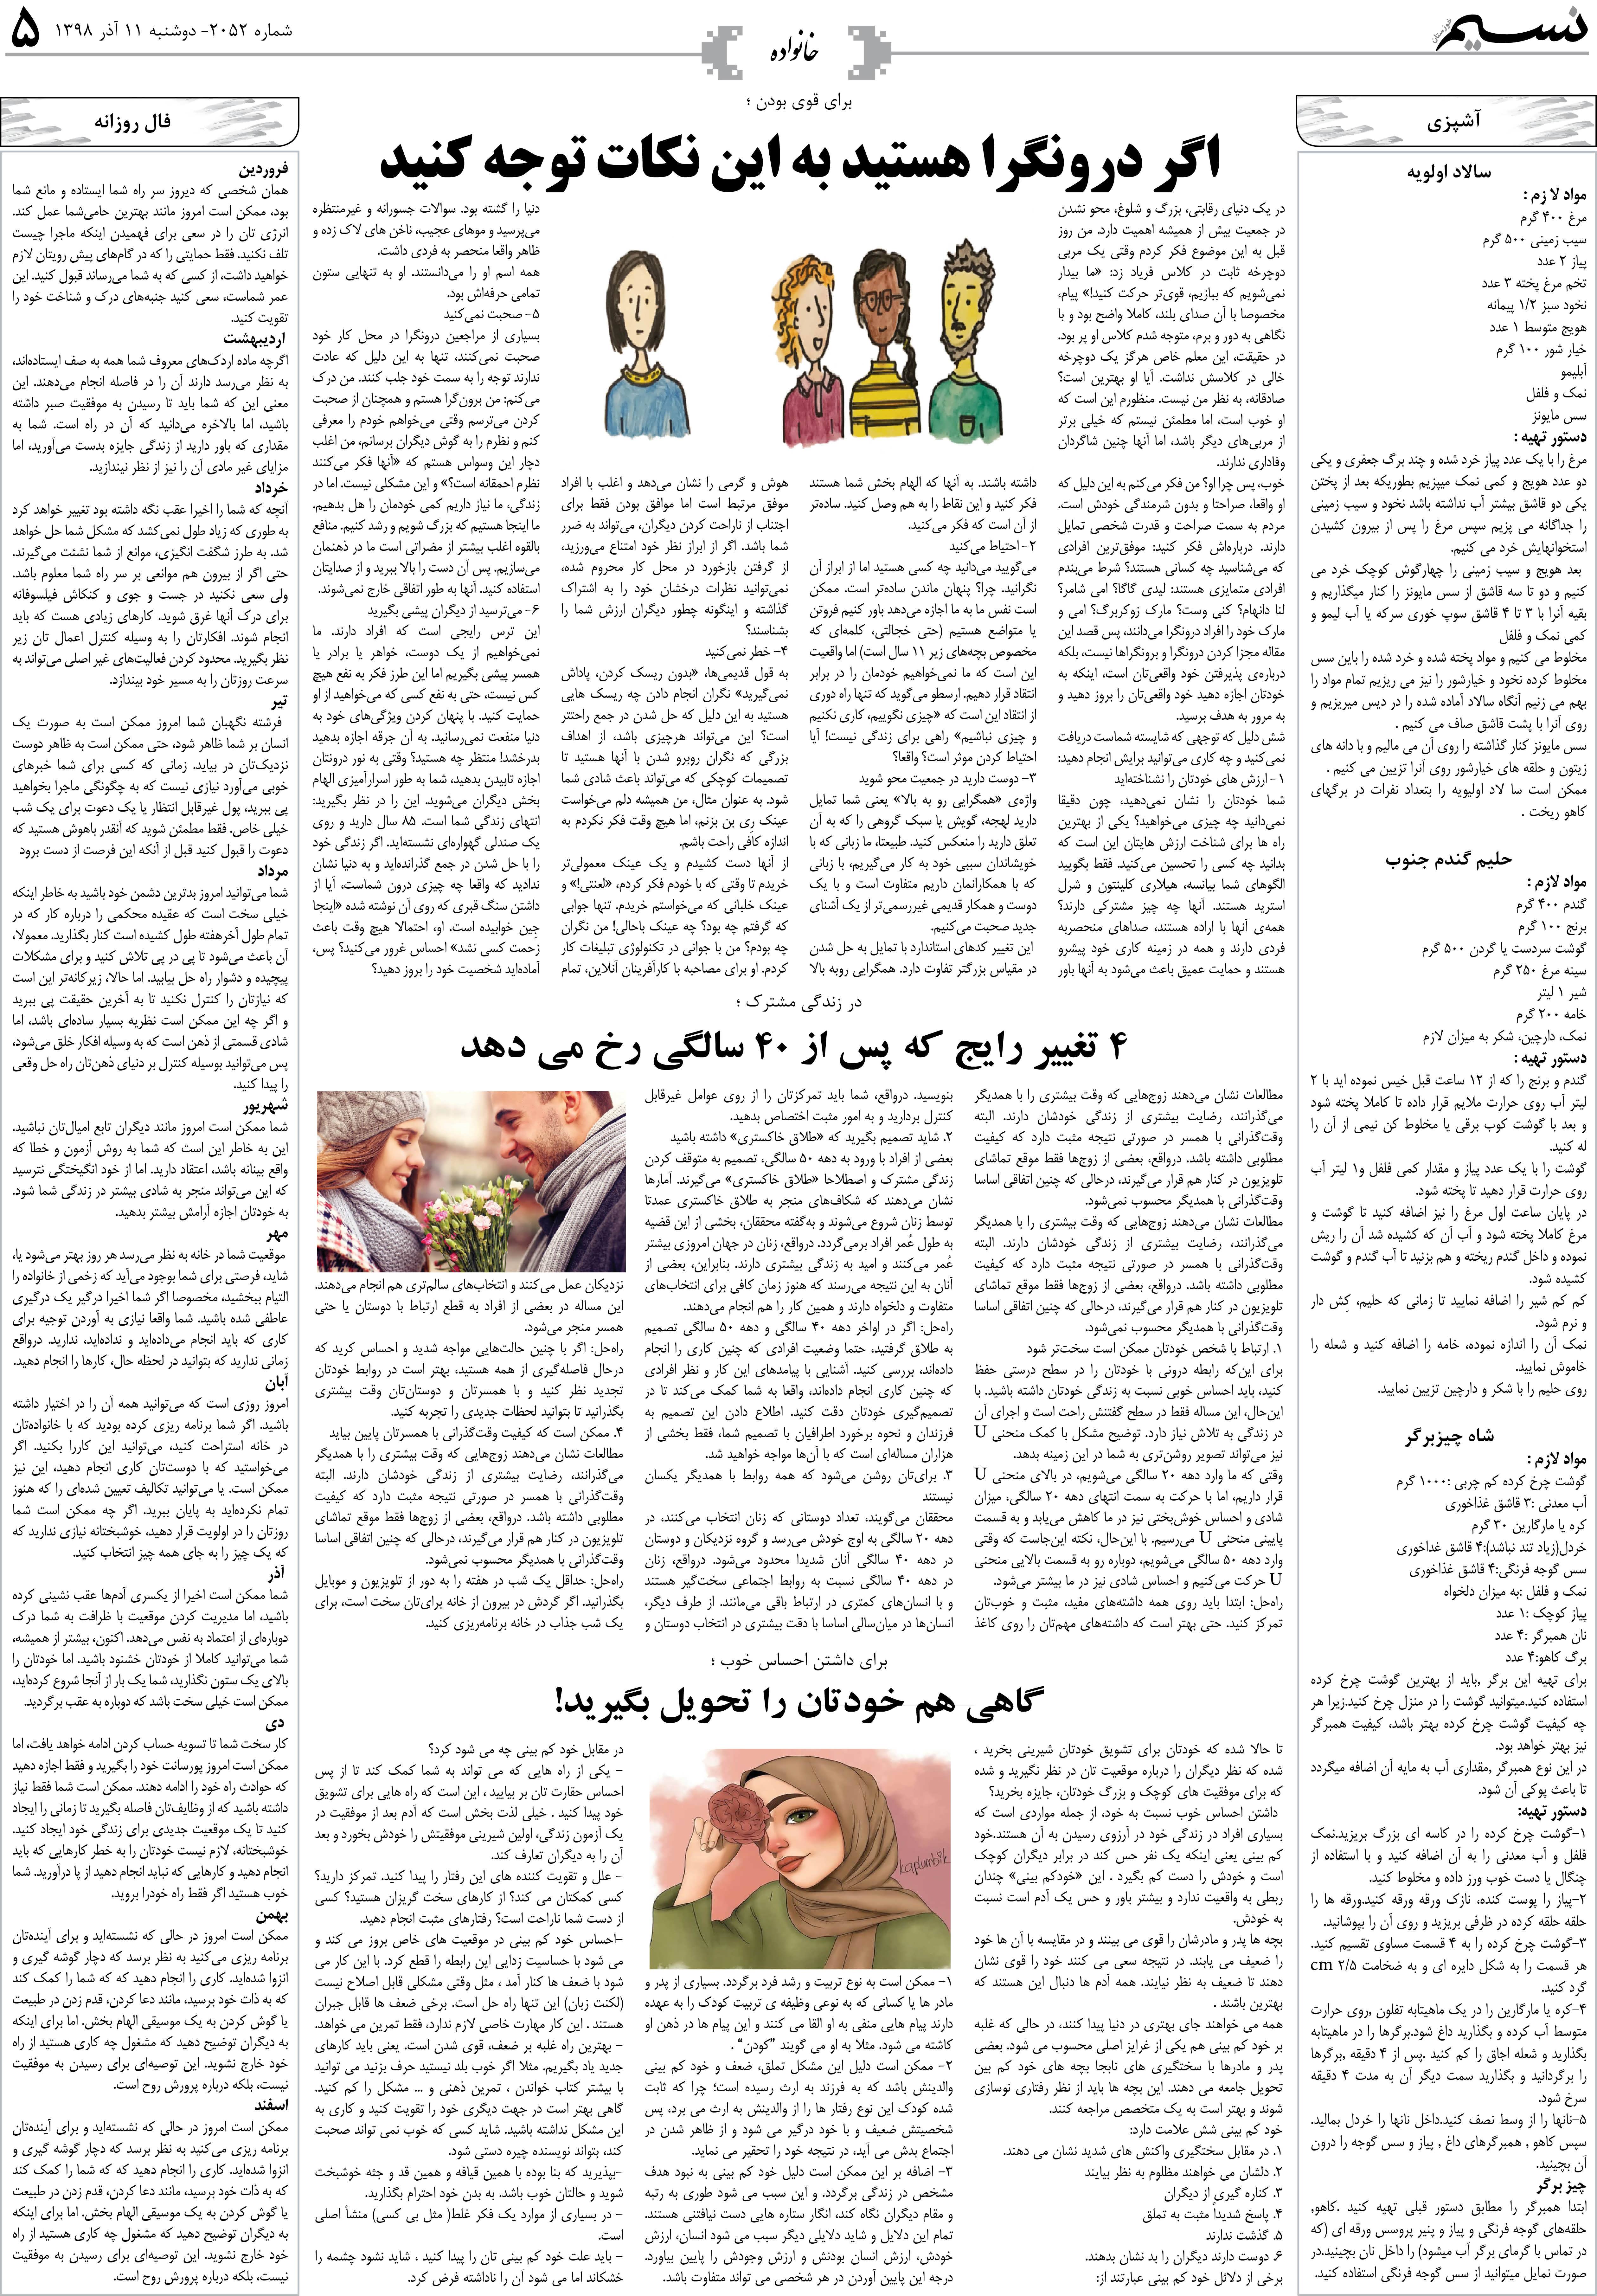 صفحه خانواده روزنامه نسیم شماره 2052